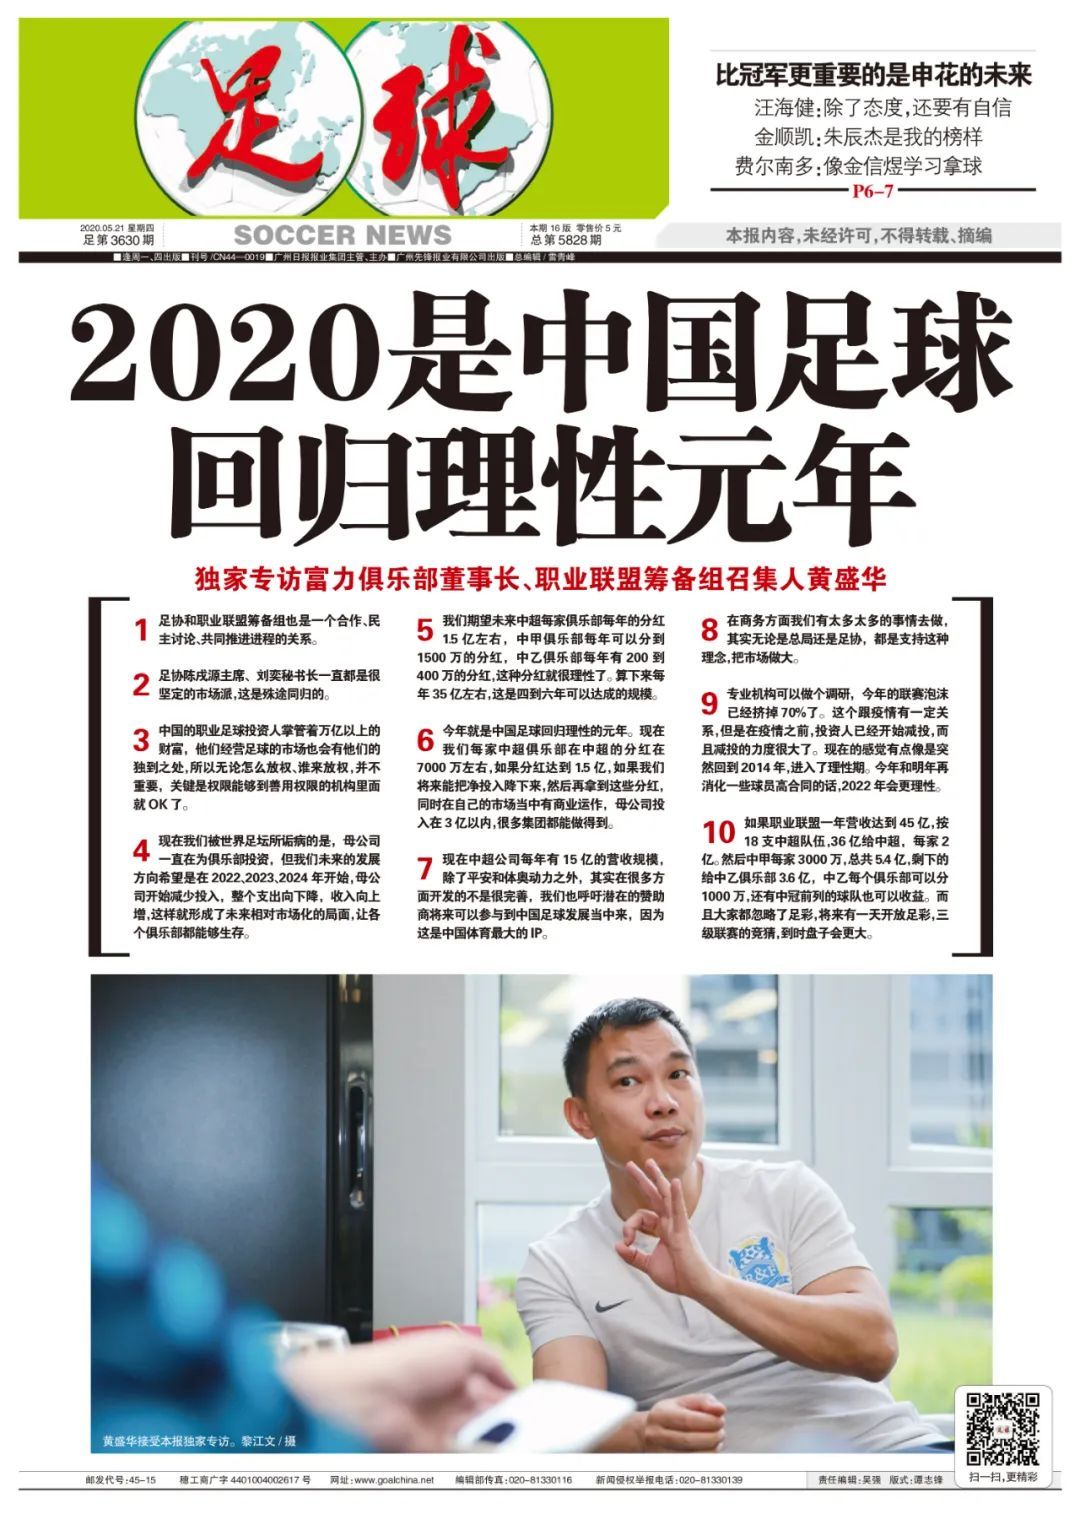 富力董事长:今年是中国足球回归理性元年 联赛泡沫已挤掉70%_职业